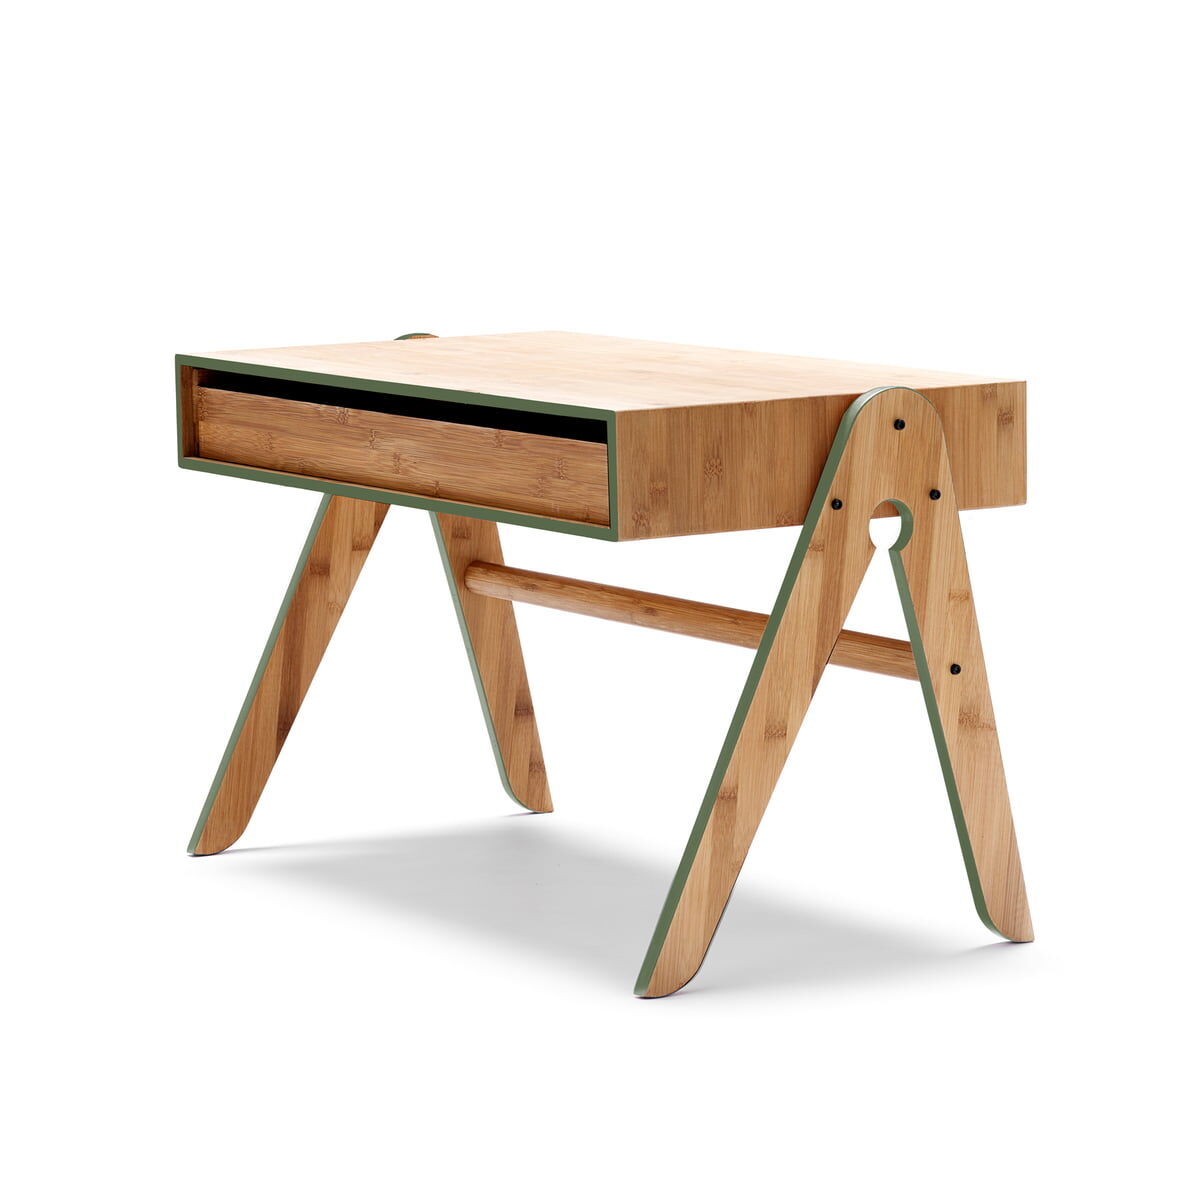 We Do Wood - Geo's Table, grün